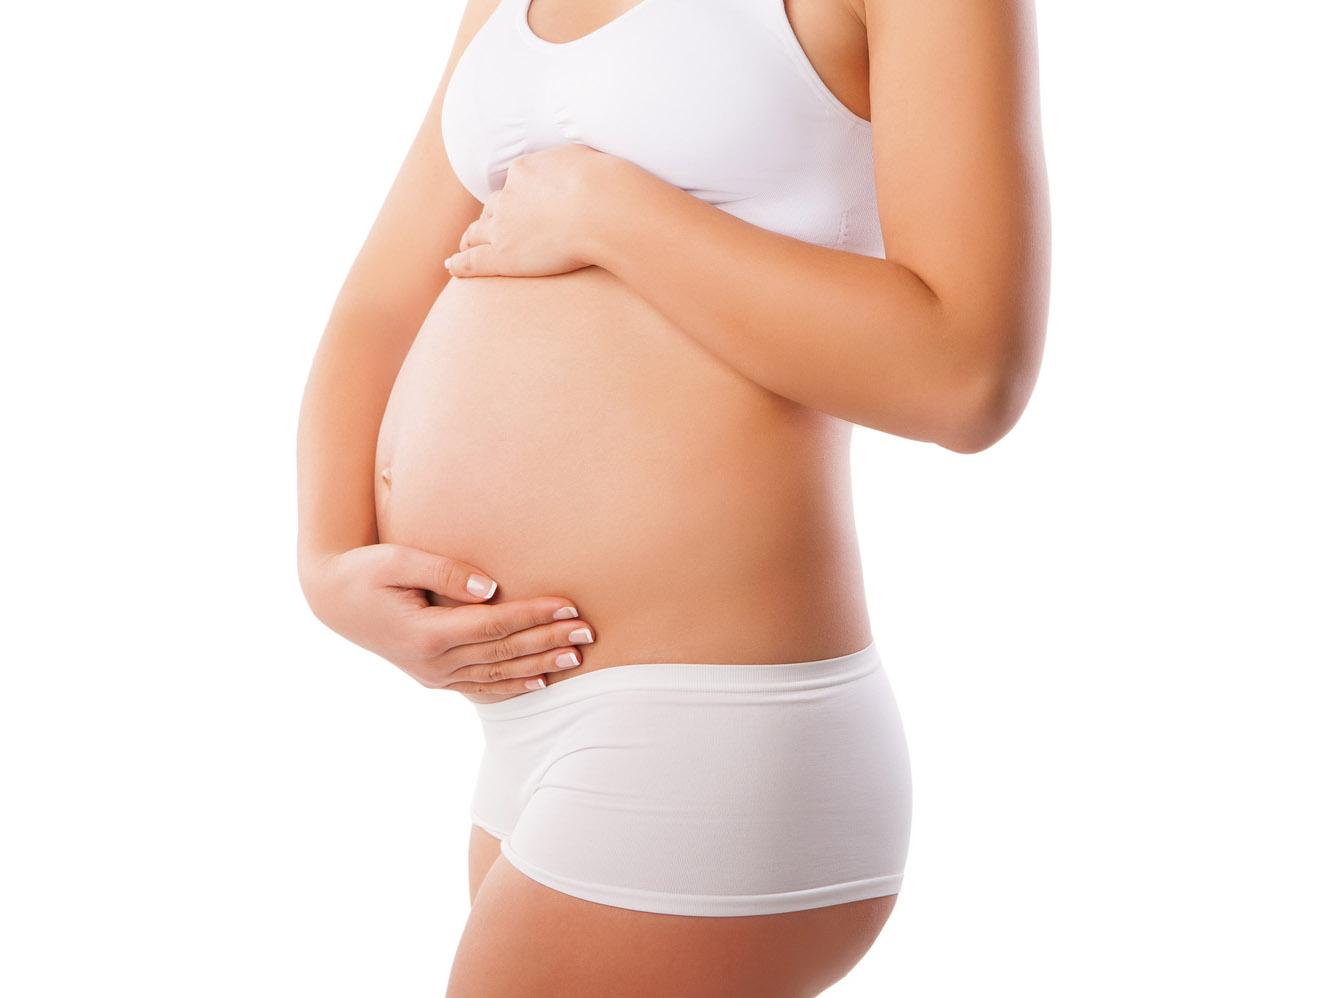 Ragazza 29enne fa un annuncio choc: “Mettetemi incinta così mamma la smette”